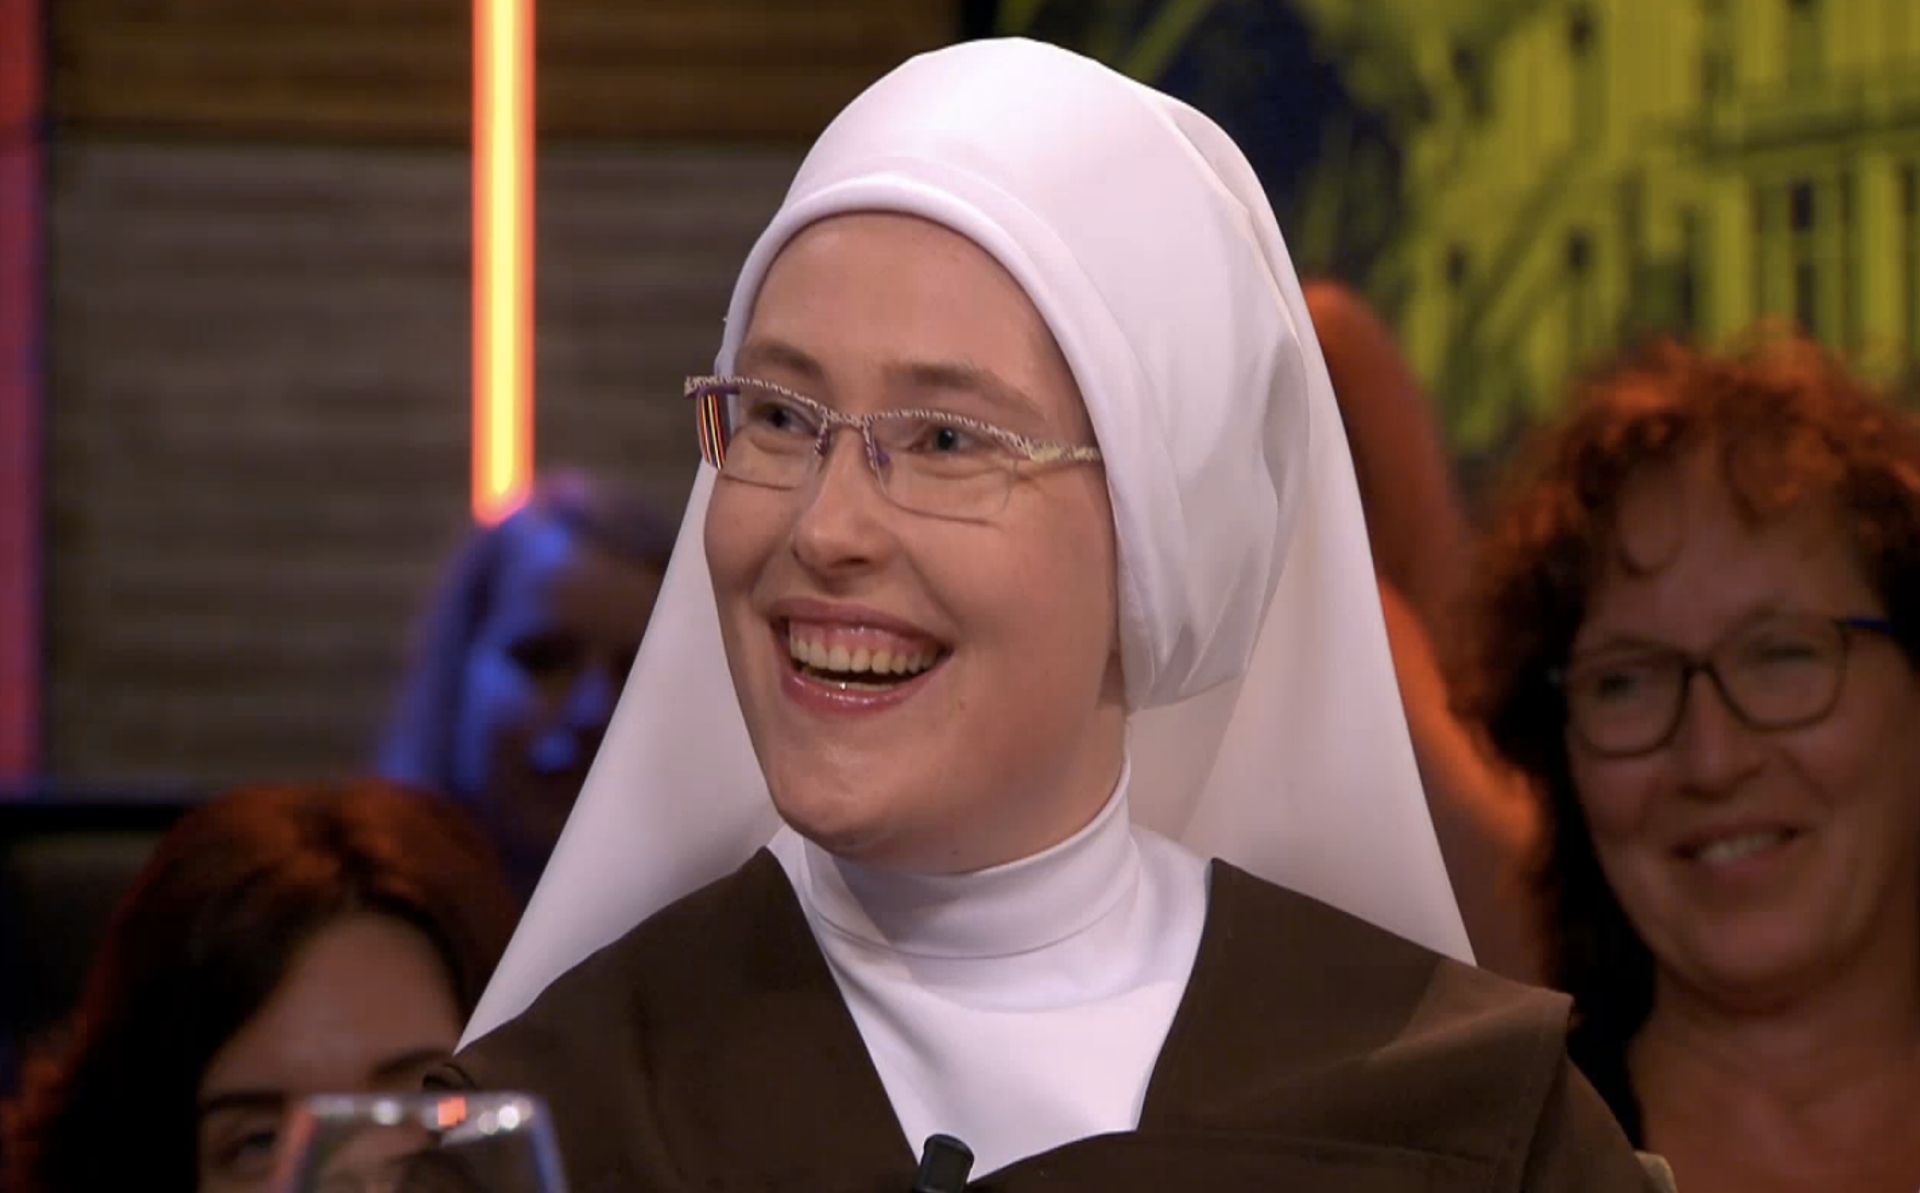 Zuster Maria Goretti